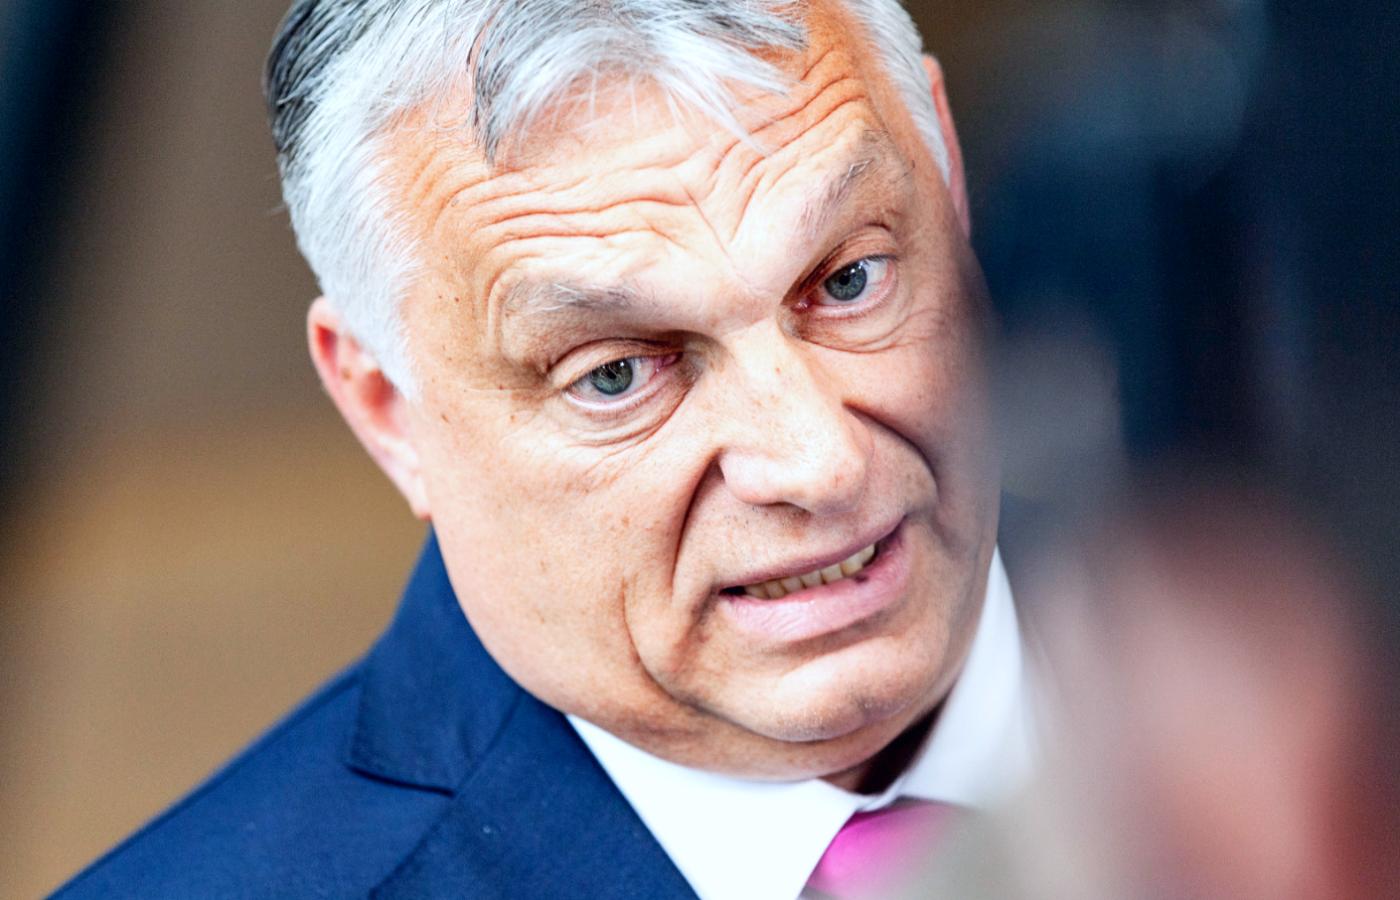 Zdaniem Viktora Orbána Europa musi radykalnie zmienić sposób postrzegania kwestii narodowych, etnicznych i rasowych.